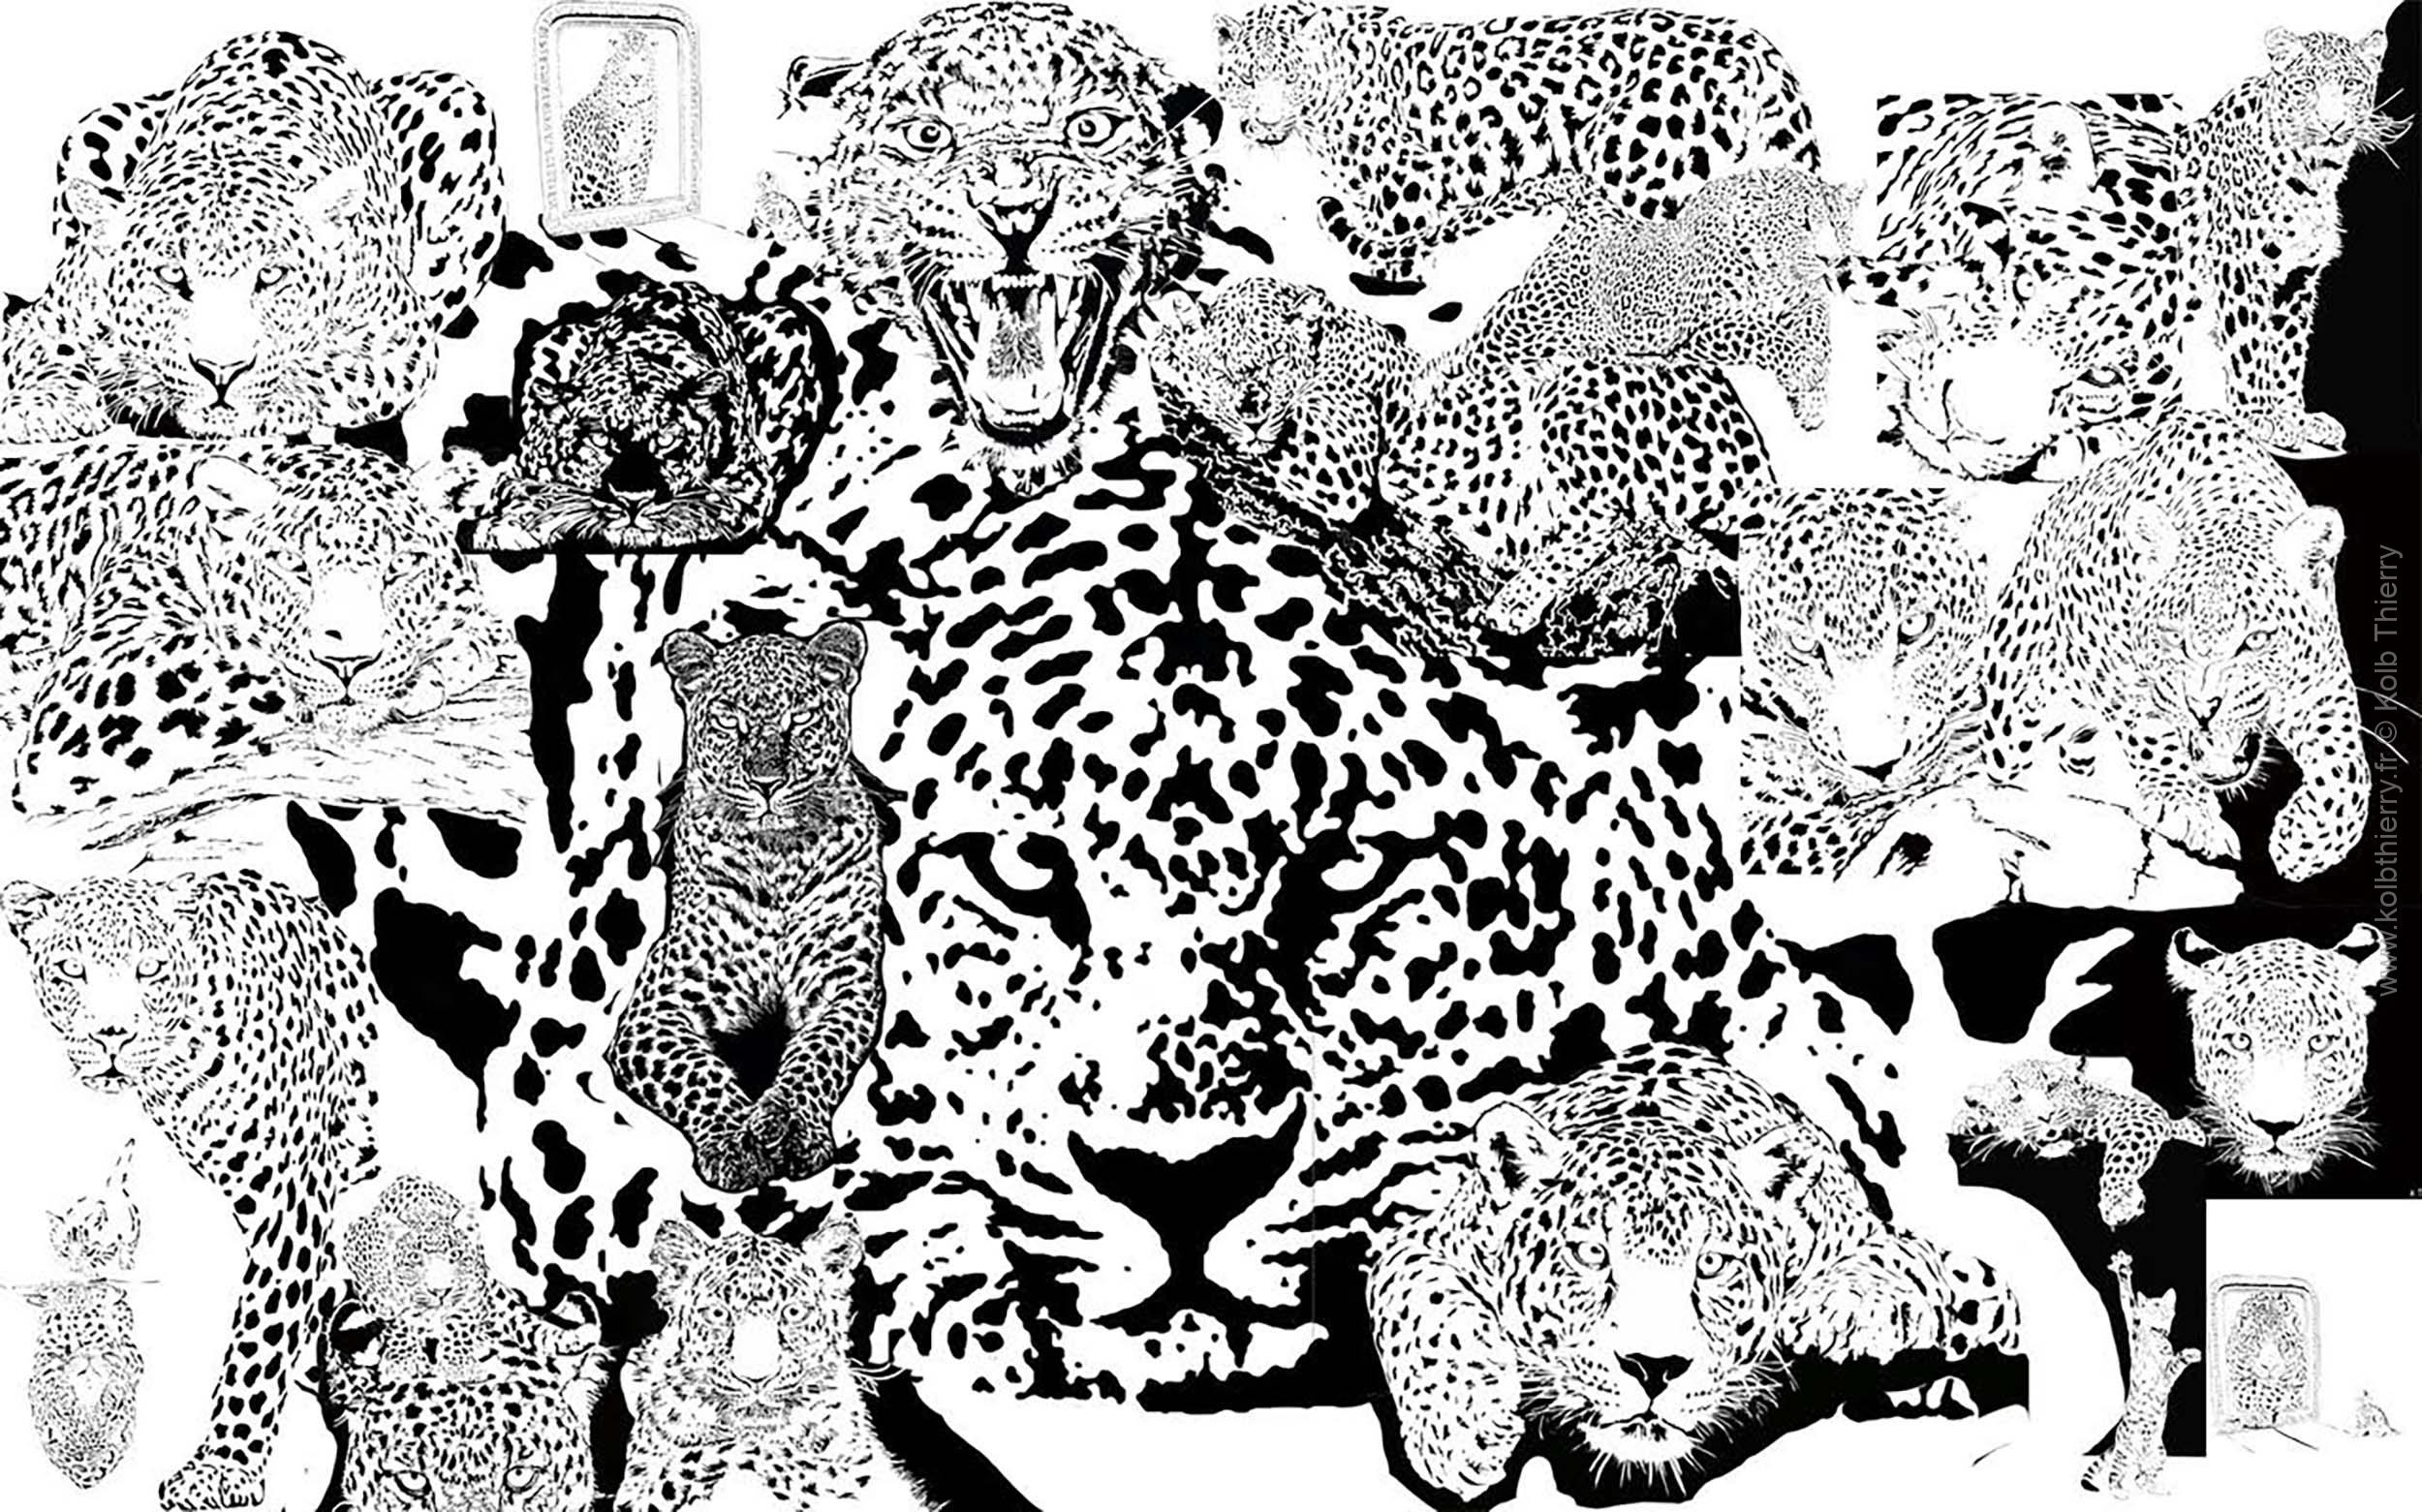 Thierry Kolb, sculpteur sur bois, vous présente tous ses voeux pour la nouvelle année 2023. 23 léopards sont réunis sur ce dessin pour saluer l'arrivée de l'année 2023